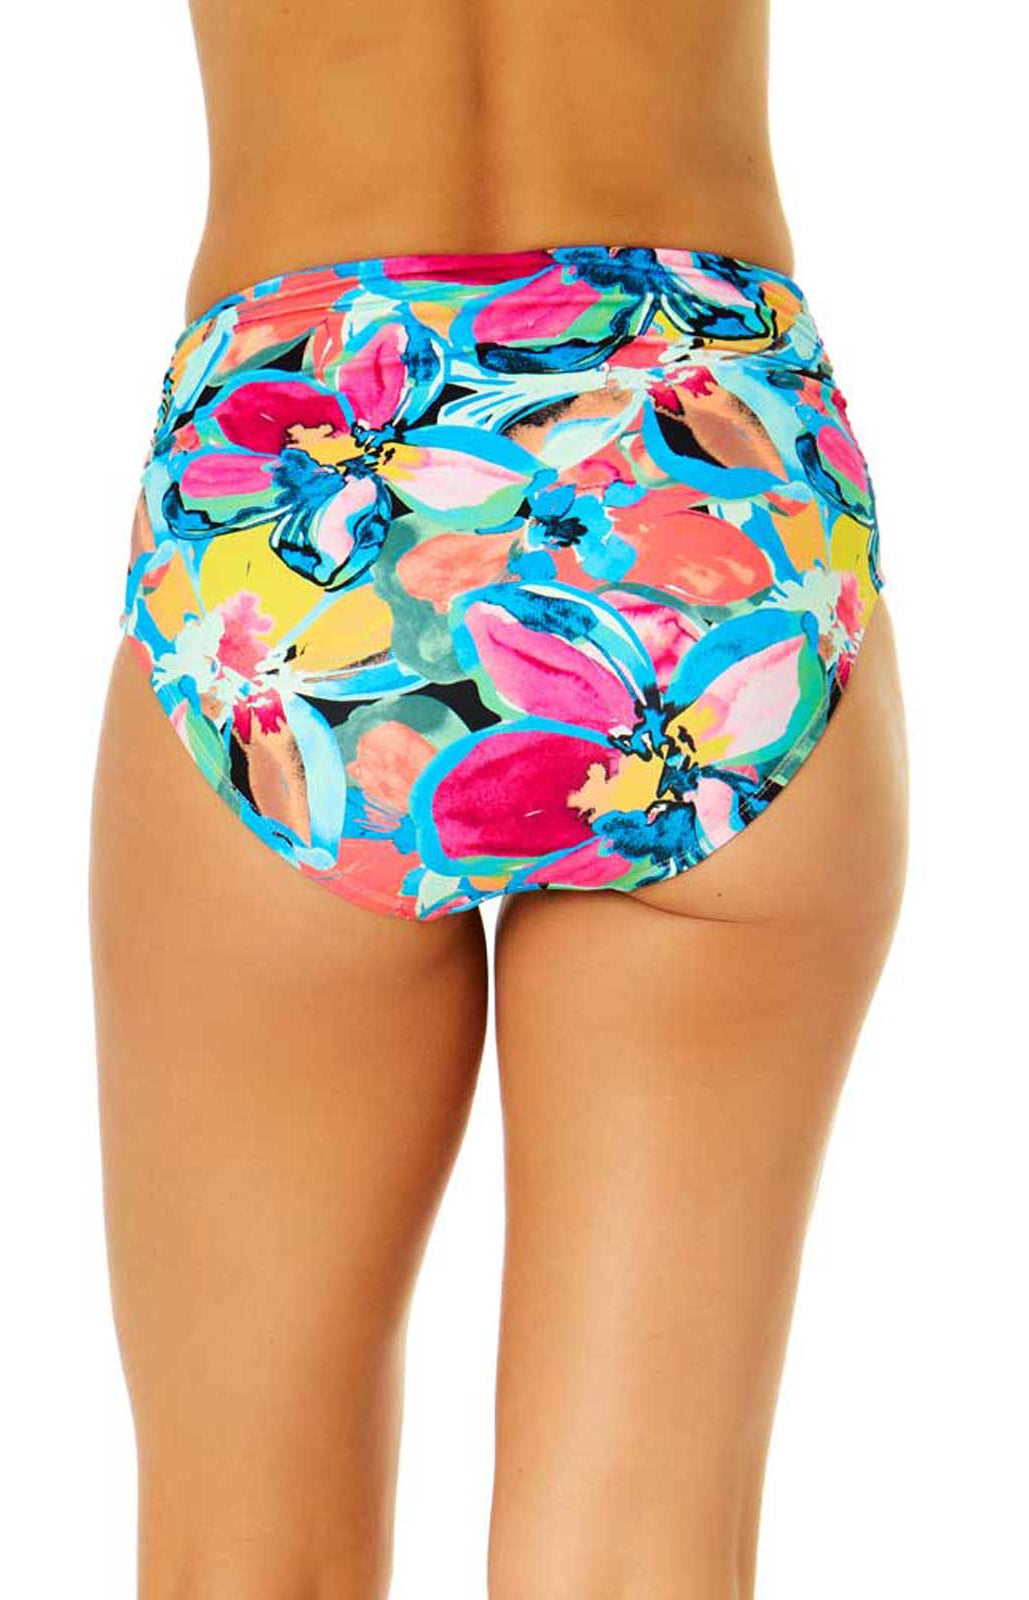 Anne Cole: Amalfi Floral Shirred High Waist Bikini Bottom